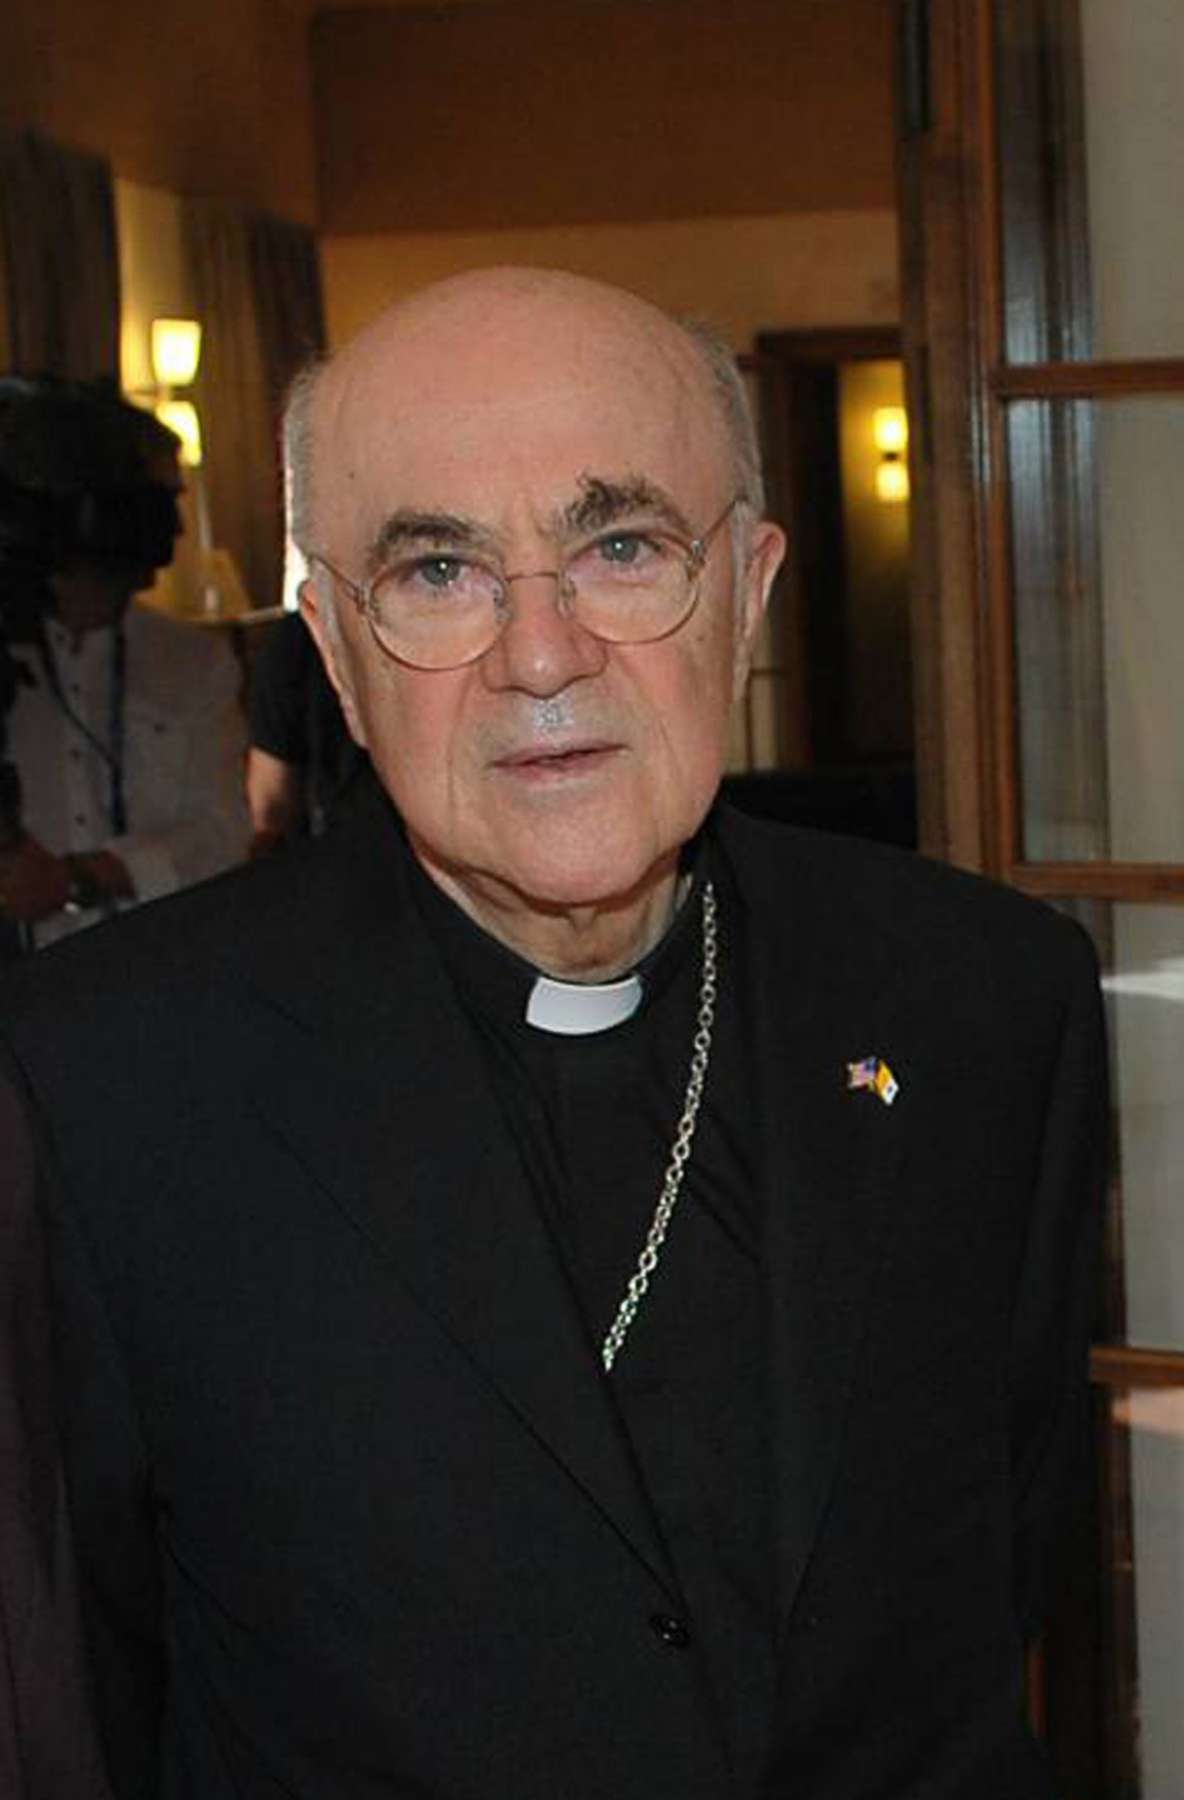 PHOTO: Monsignor Carlo Maria Vigano' in Rome, April 2016.